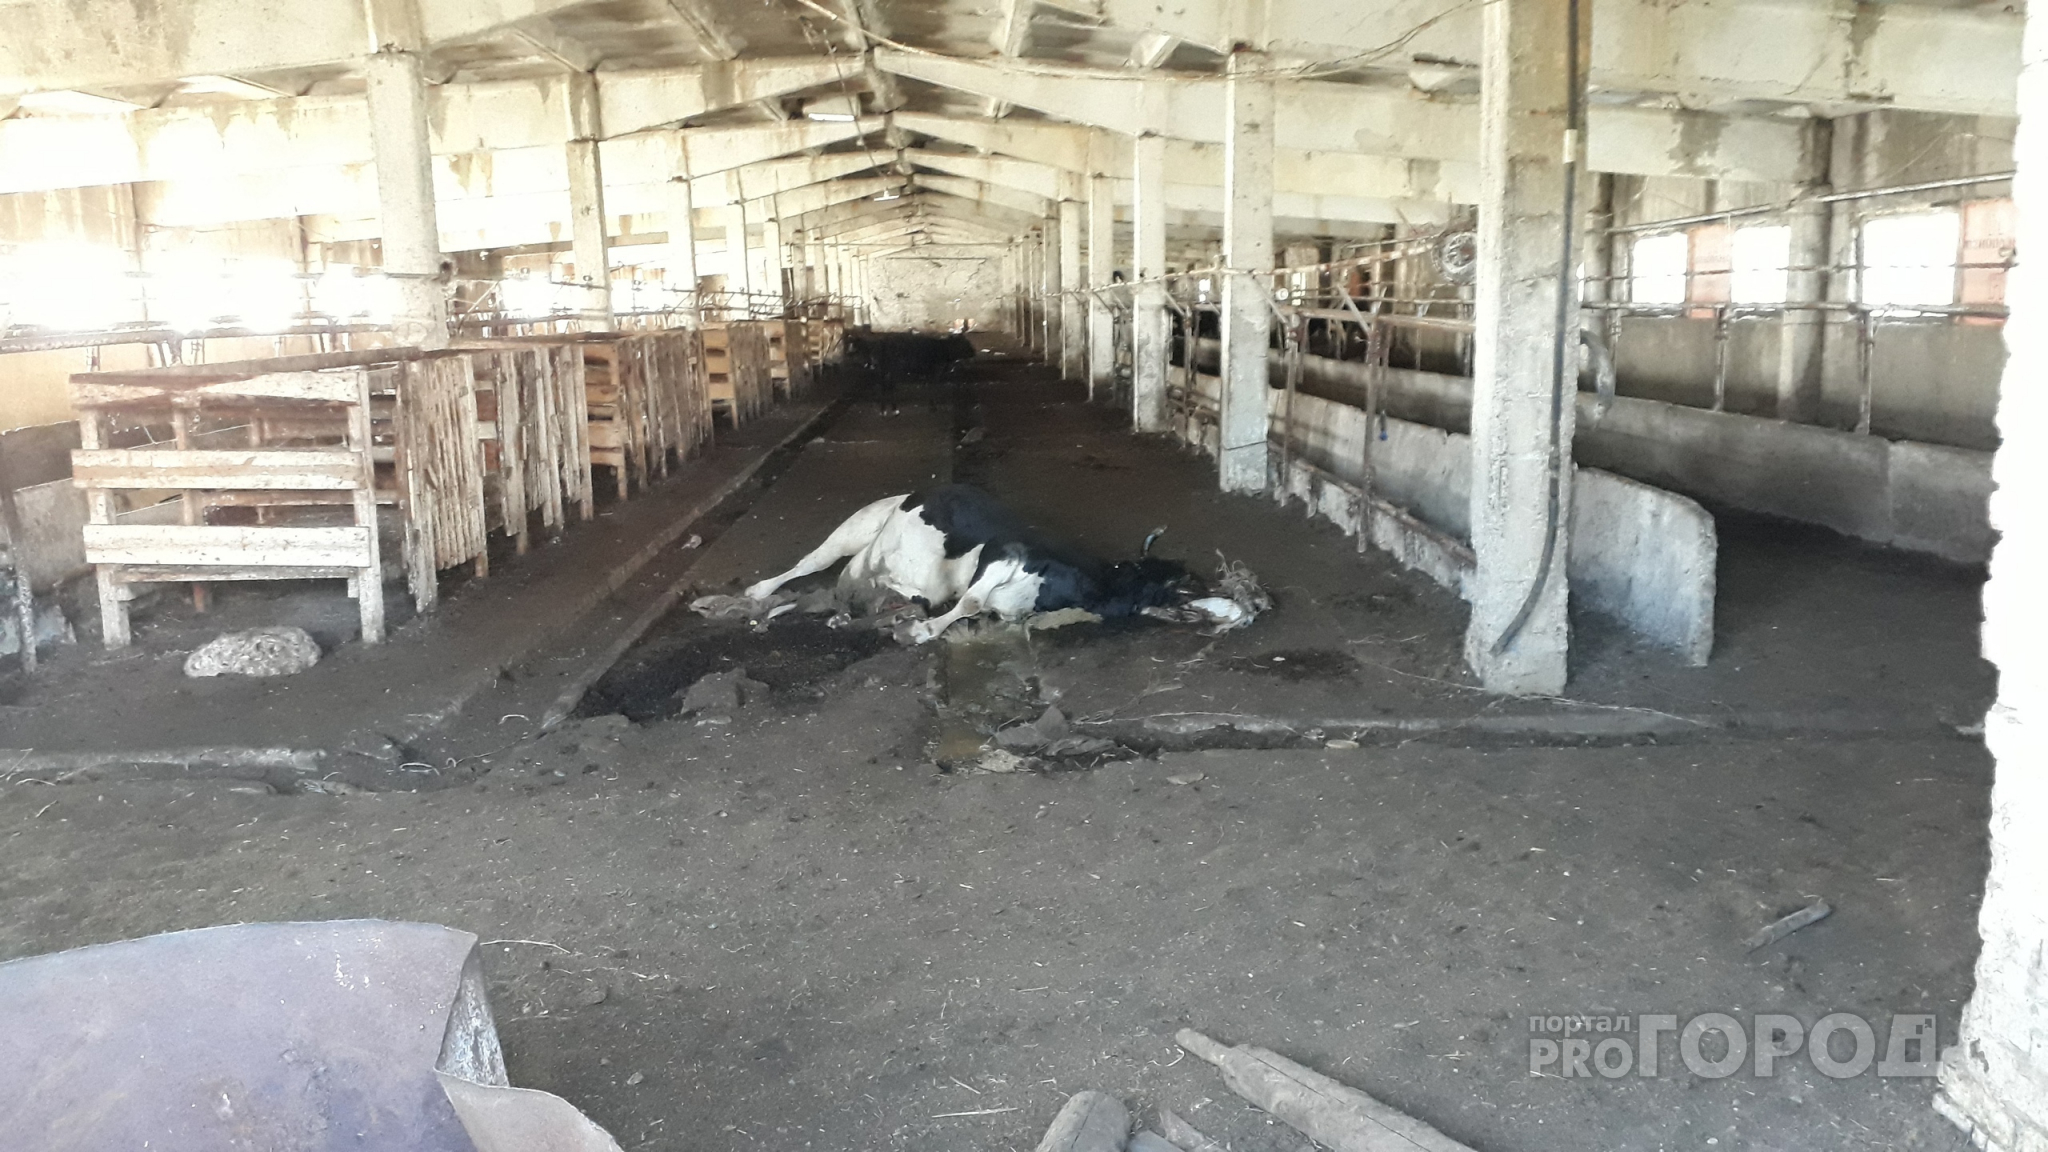 Специалисты нашли причину гибели коровы в Вурнарском районе, которая переполошила местных жителей